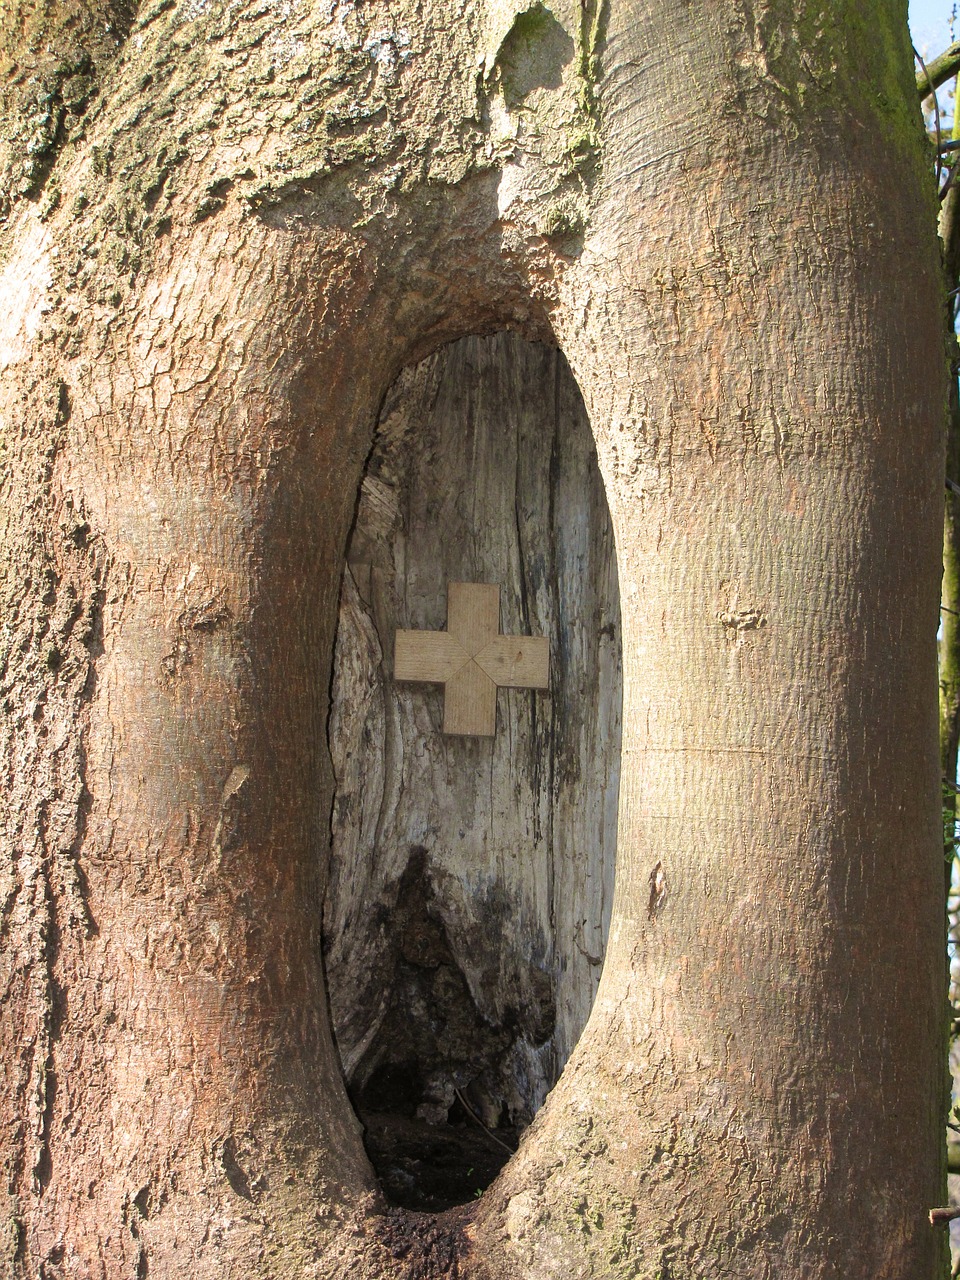 knothole tree scar free photo